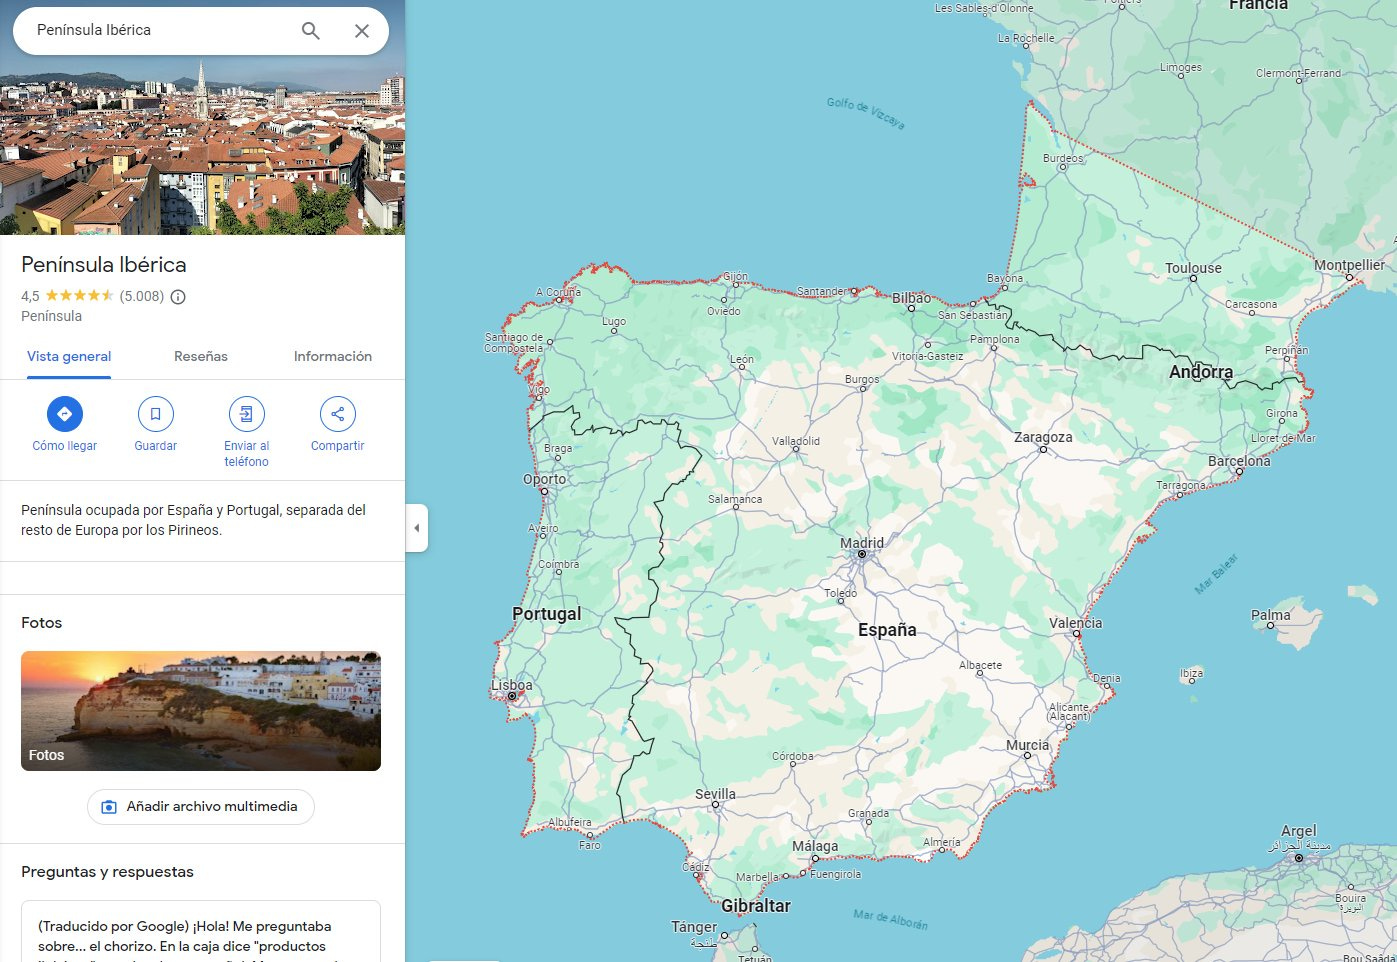 Imagen de Google Maps mostrando la Península Ibérica, lo cual incluye España, Portugal, Gibraltar, Andorra... y además parte del sur de Franca (de Monpellier a Budeos).